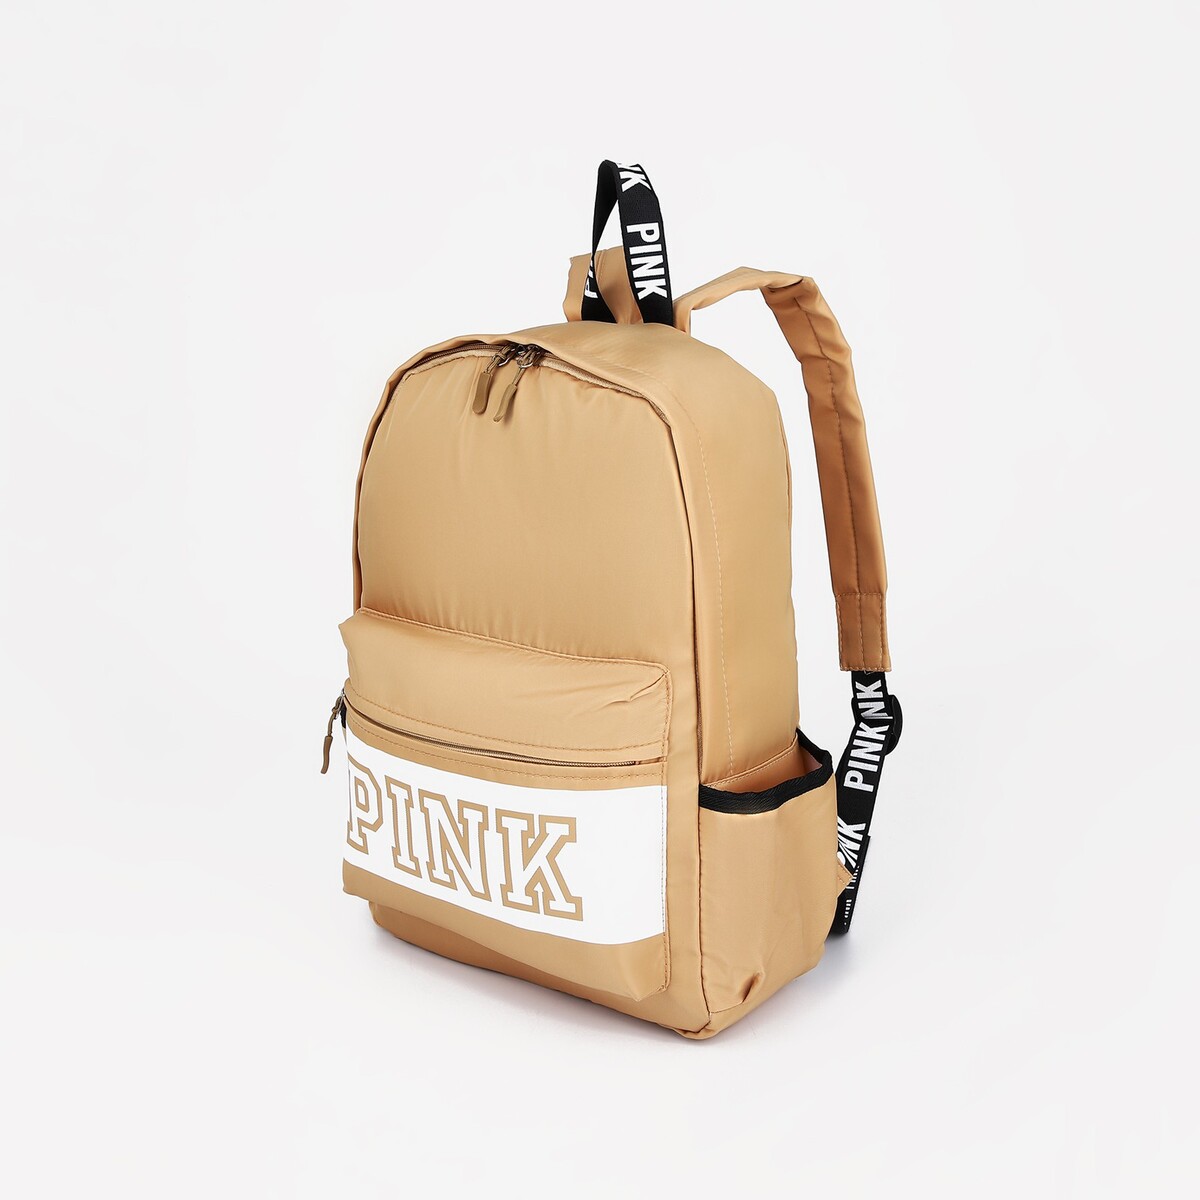 Рюкзак на молнии, наружный карман, 2 боковых кармана, цвет бежевый рюкзак школьный из текстиля на молнии 4 кармана кошелек бежевый